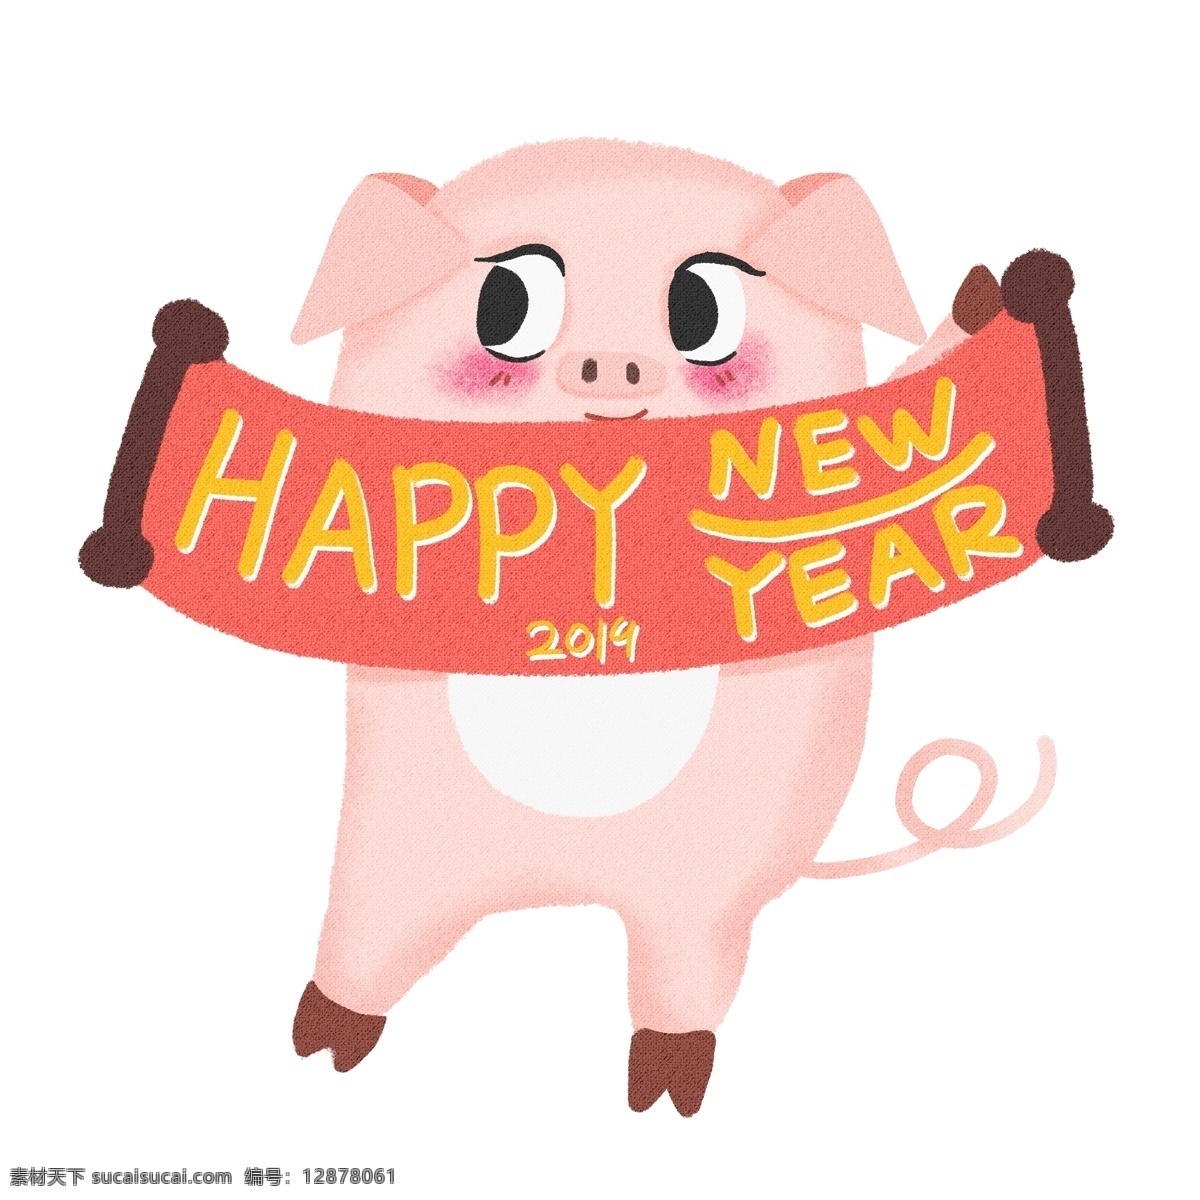 猪年 可爱 卡通 小 猪 形象 元素 可爱小猪 卡通小猪 手绘猪 新年快乐 简约小猪 猪年形象 猪年装饰